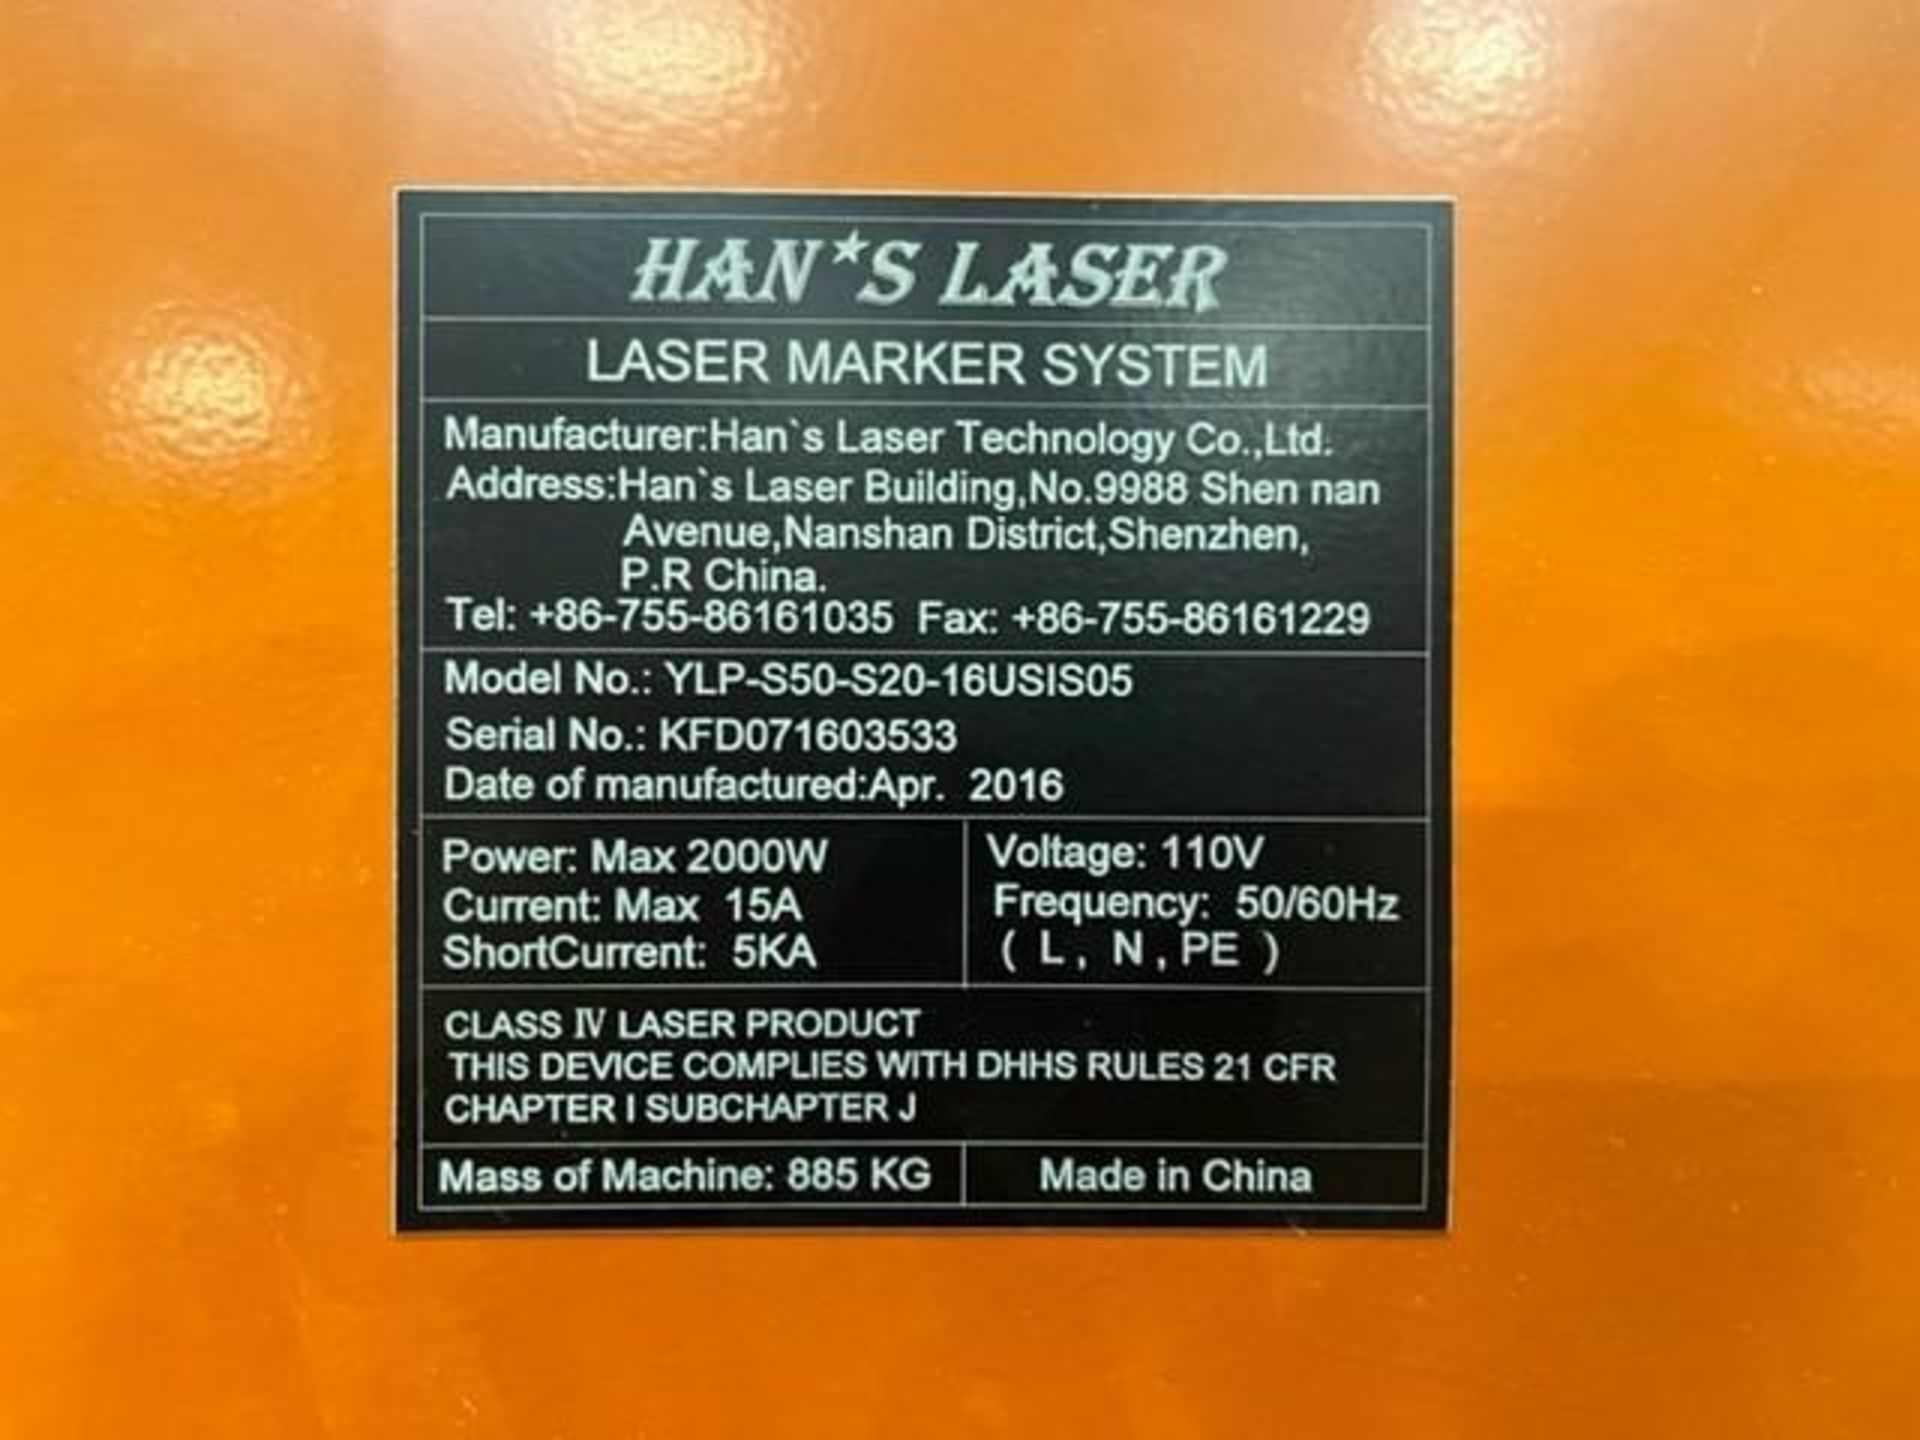 Laser Marking Center - Image 14 of 14